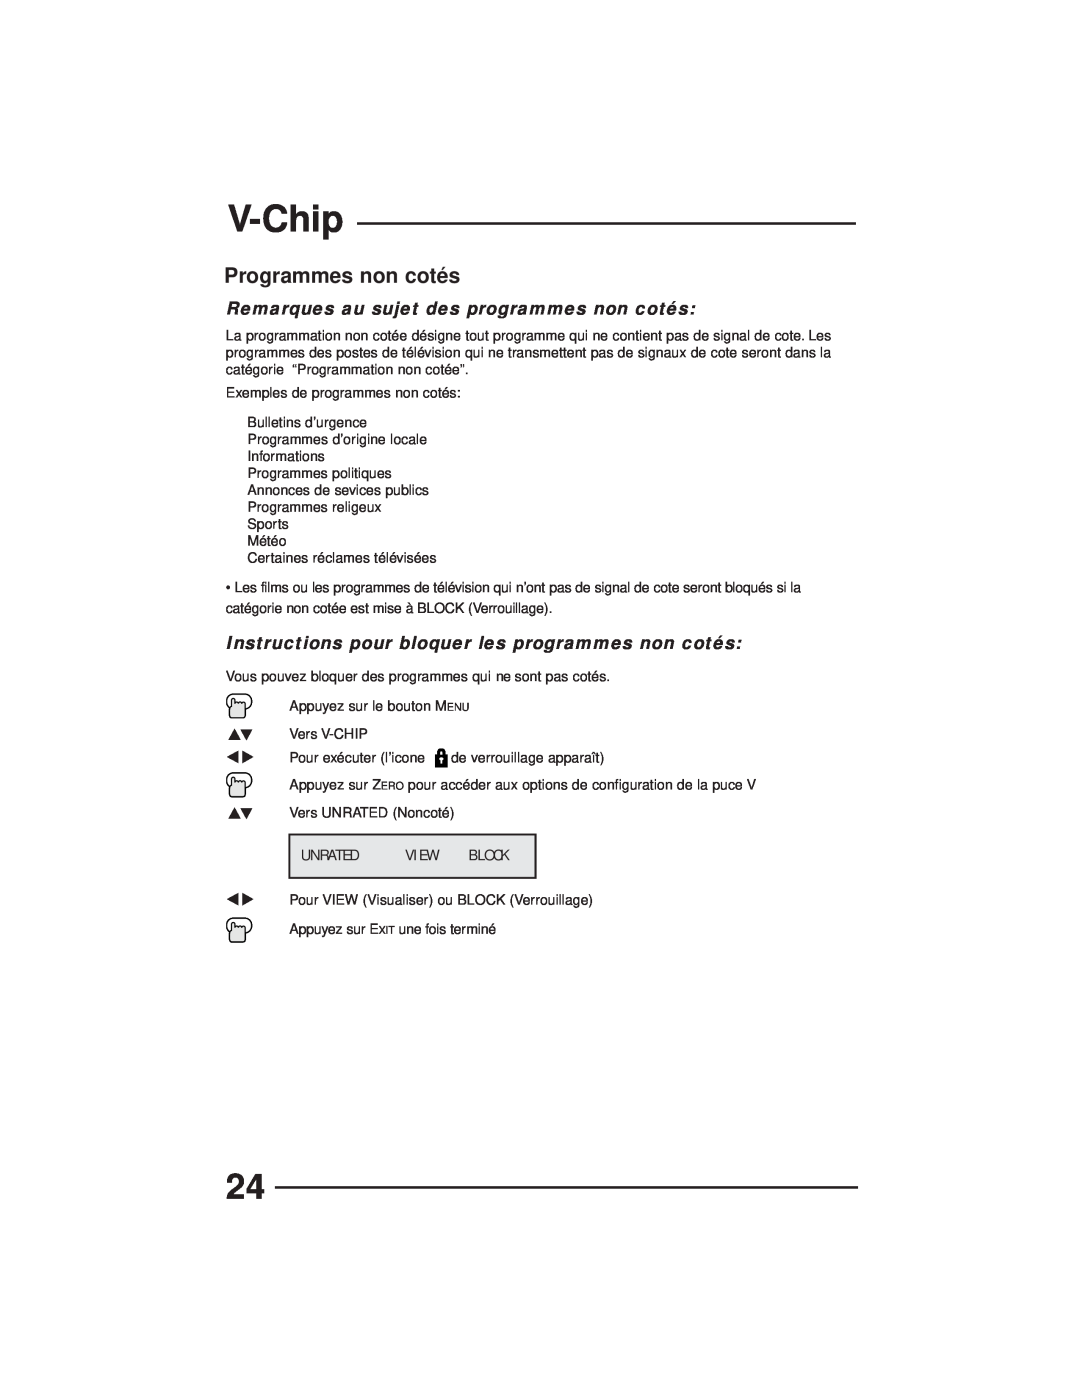 JVC AV-27GFH manual Programmes non cotés, V-Chip, Remarques au sujet des programmes non cotés, Unrated, View, Block 